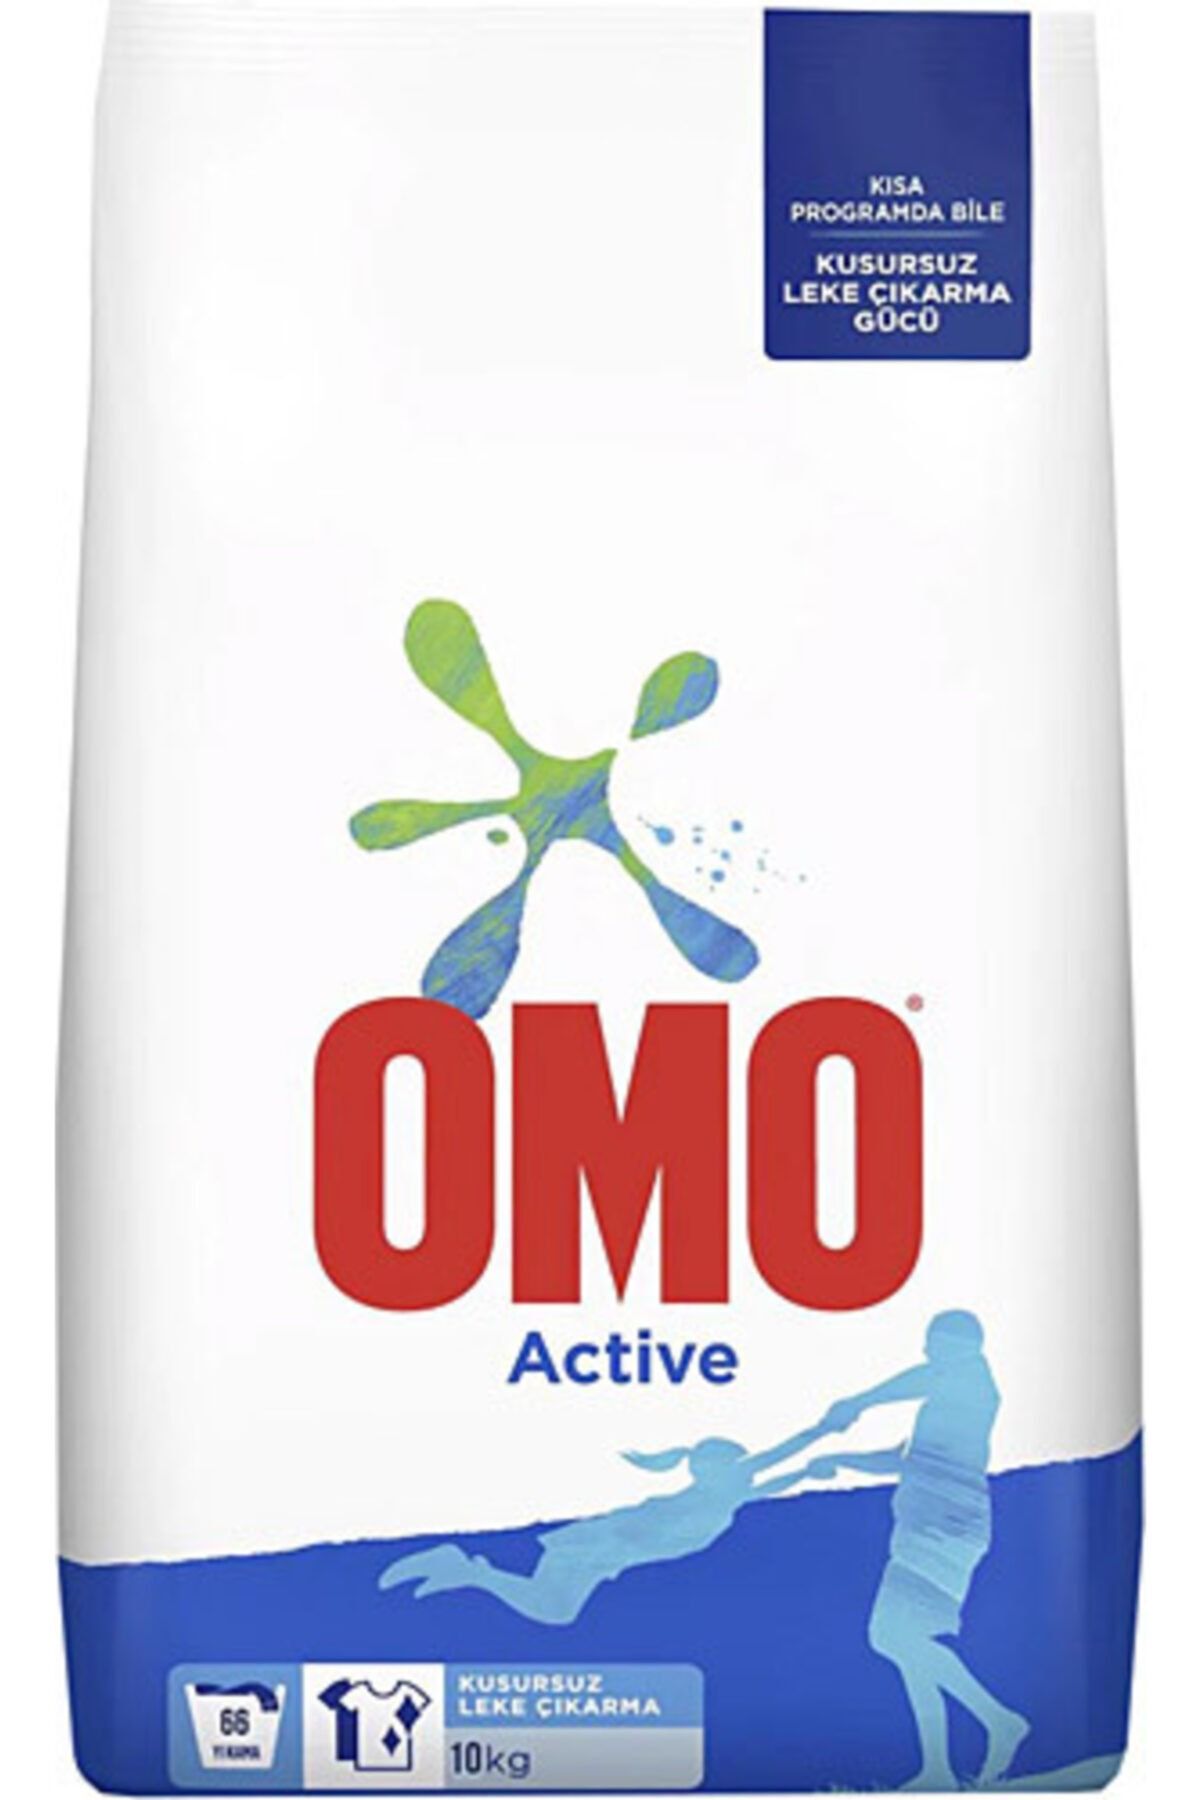 Omo Active 10kg Matik Çamaşır Deterjanı